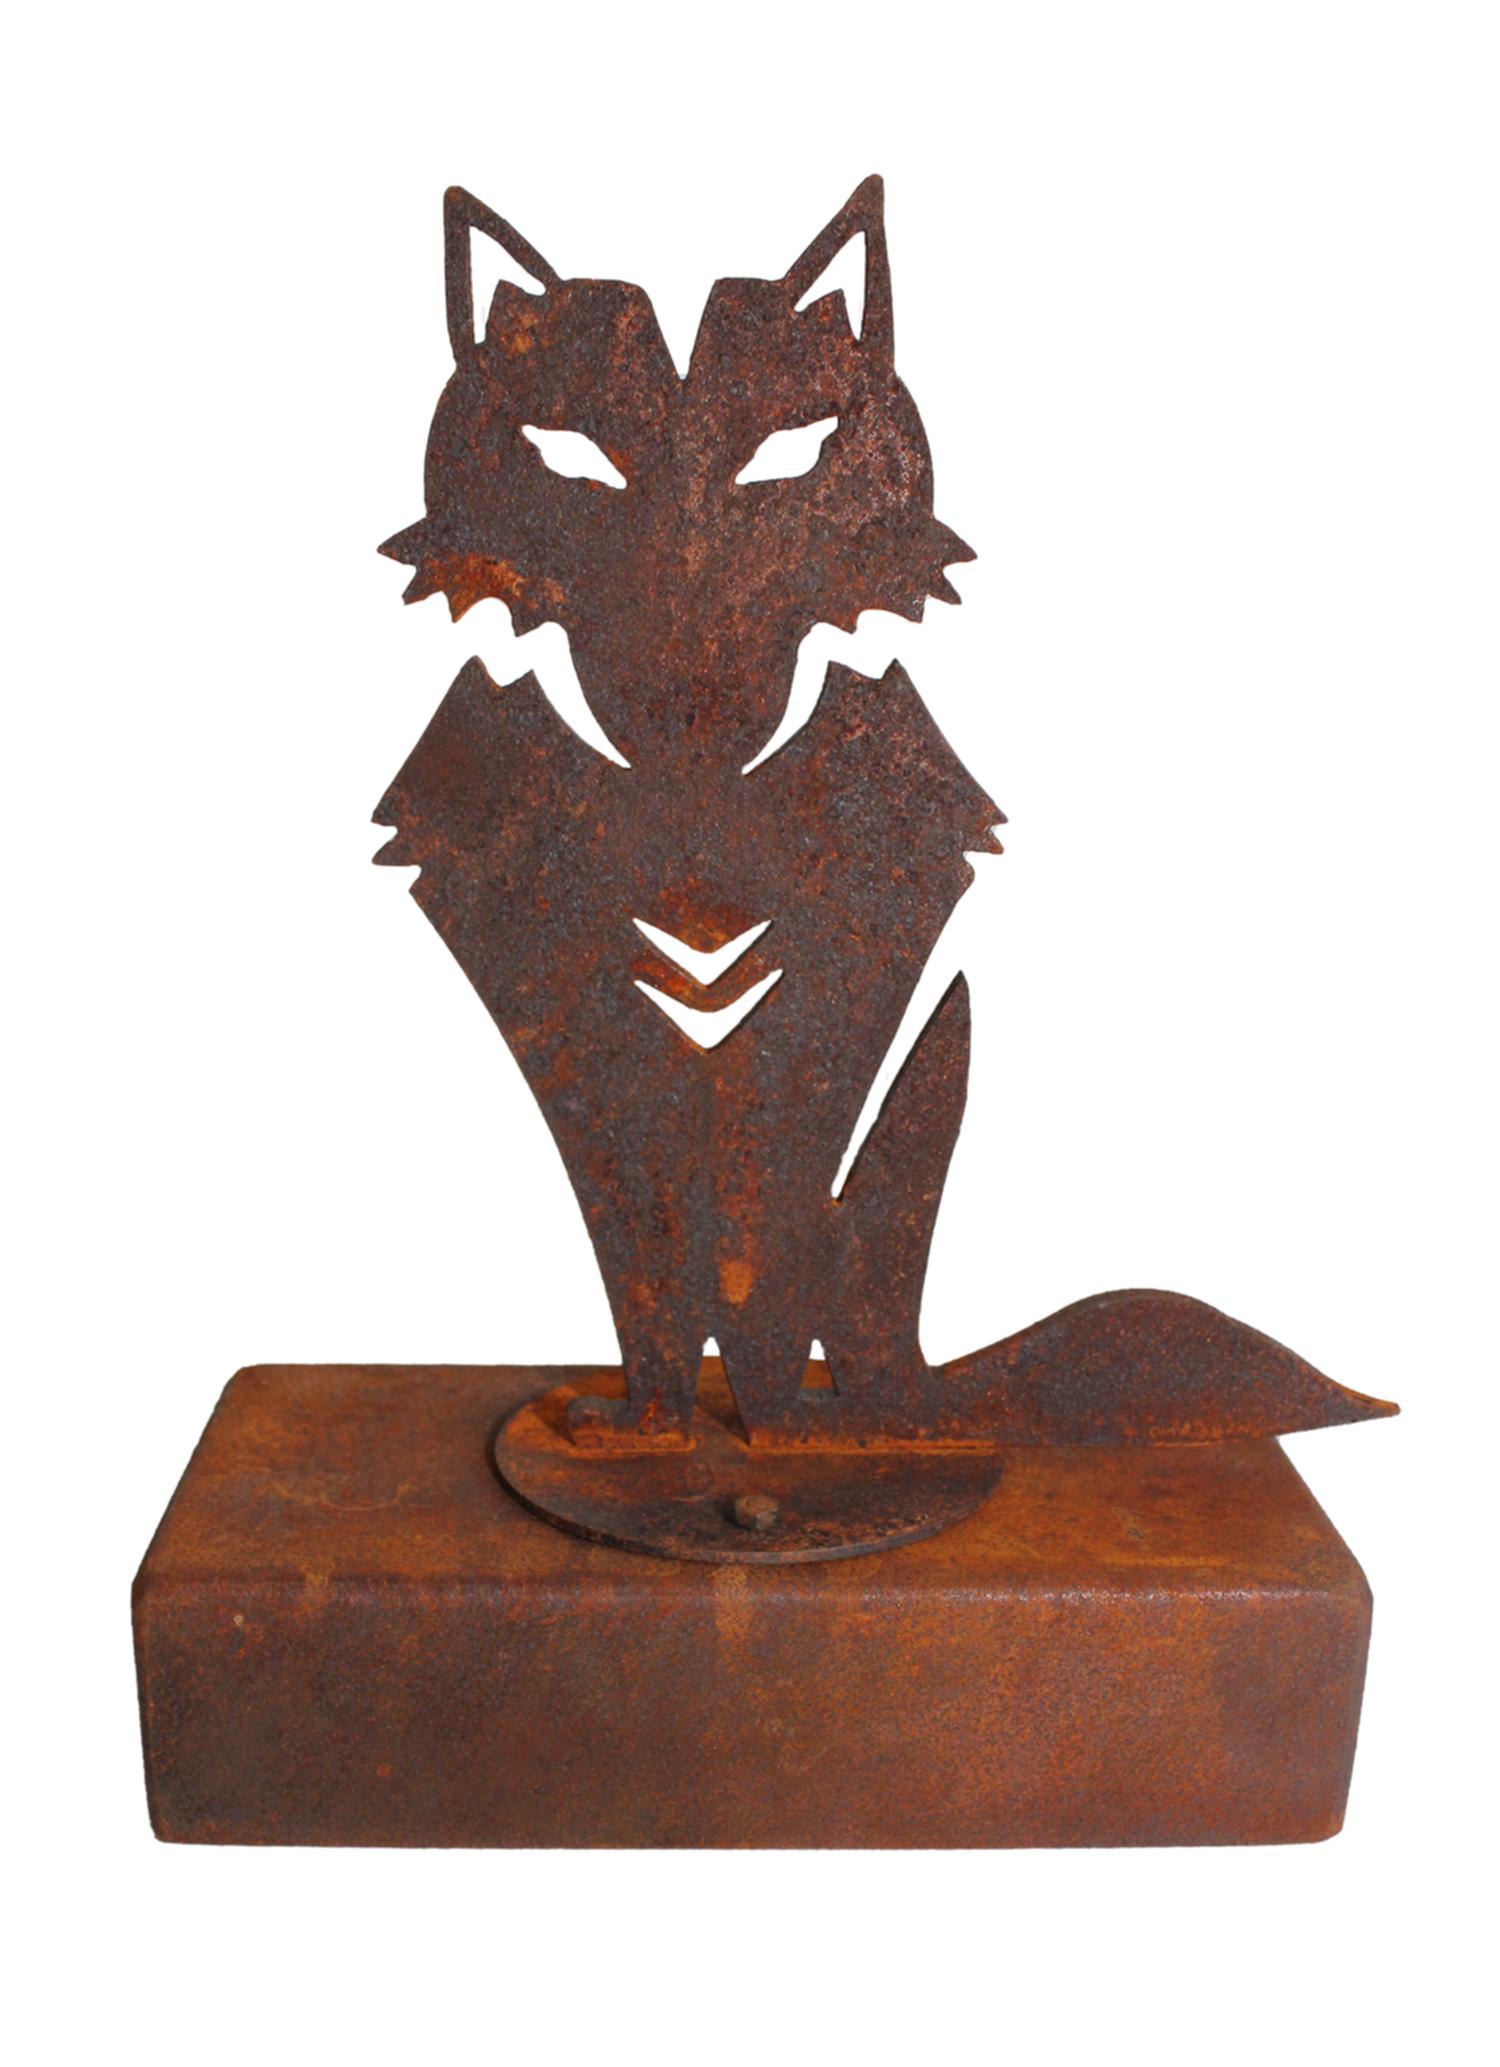 Pet Urn - "Wilderness, Dog" - oxidised corten steel - elegant ornament - Art by Chroessi Schnell